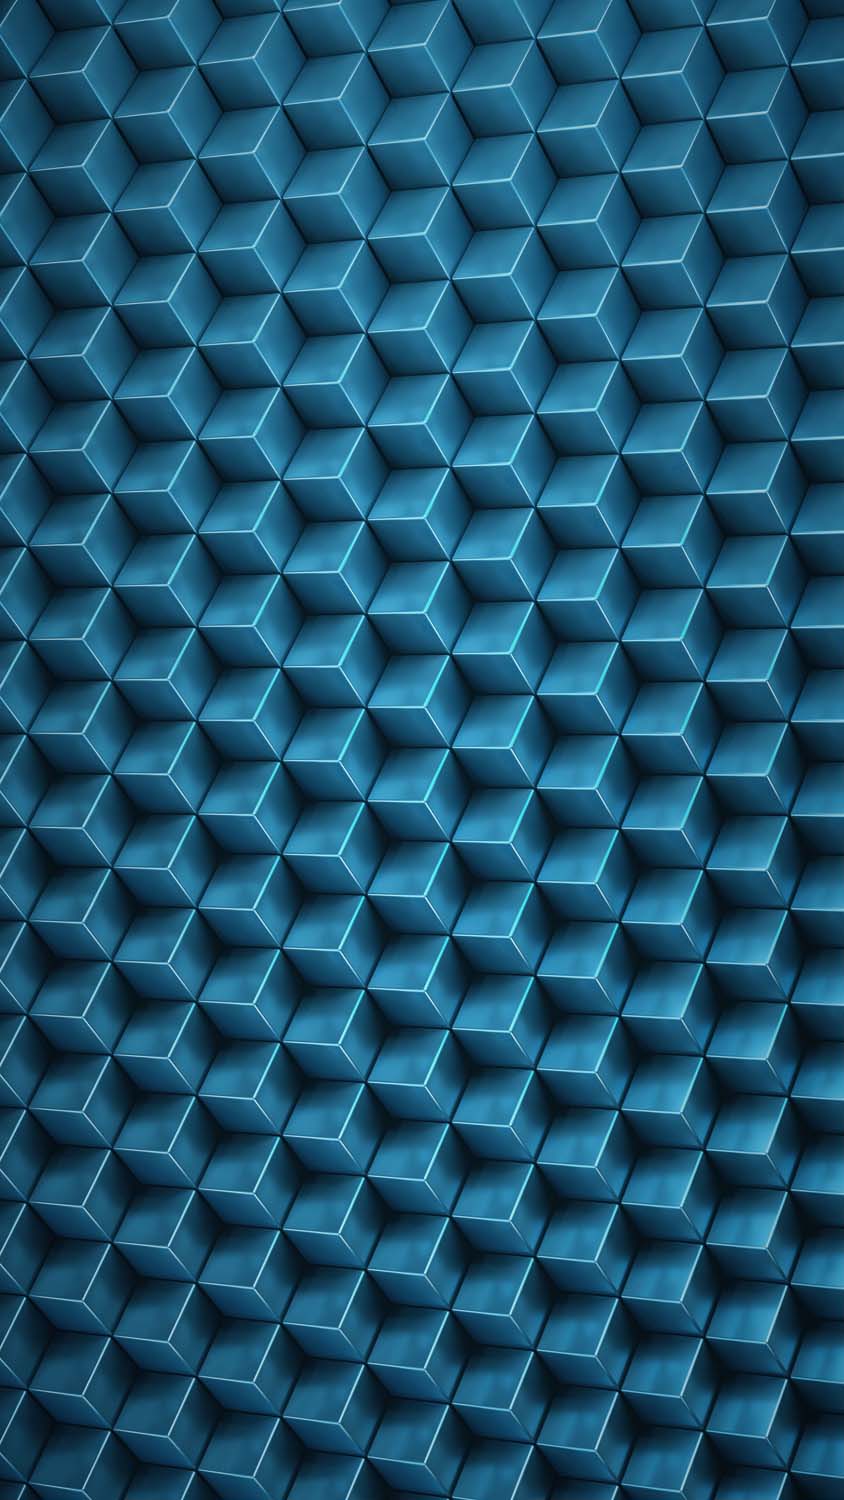 3D Blue Cubes iPhone Wallpaper 4K